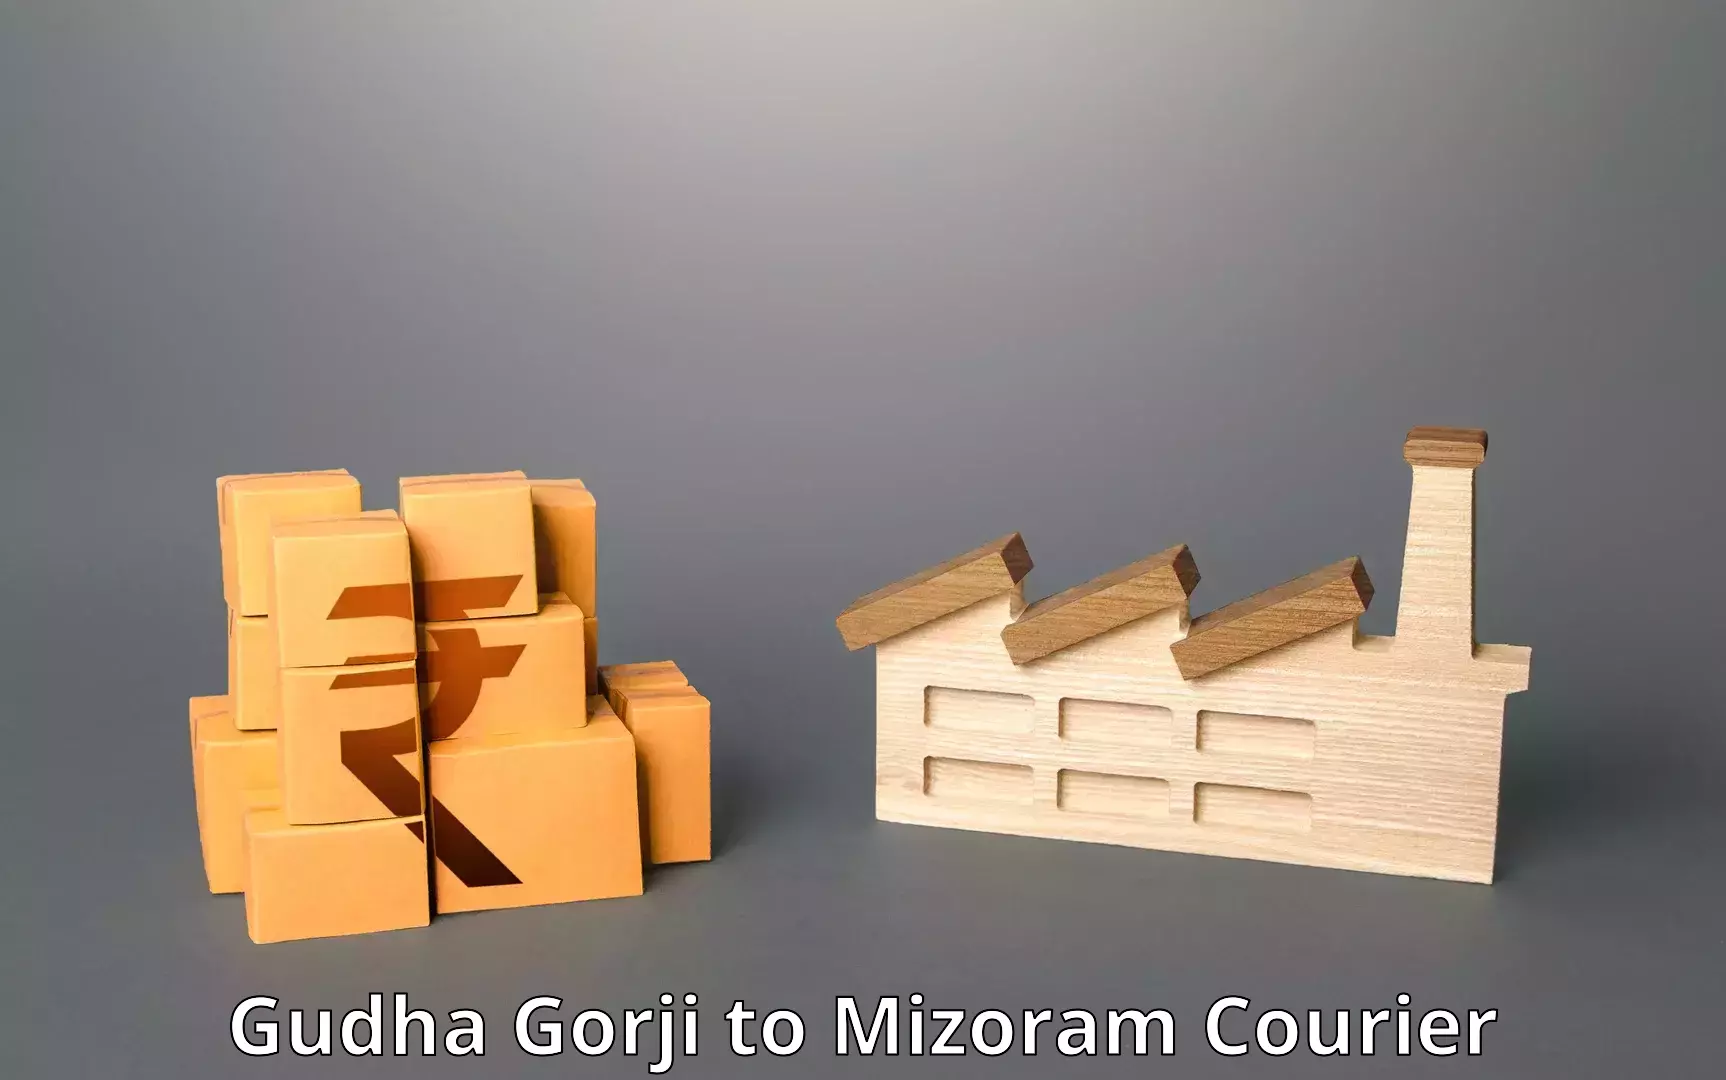 Express mail solutions Gudha Gorji to Mizoram